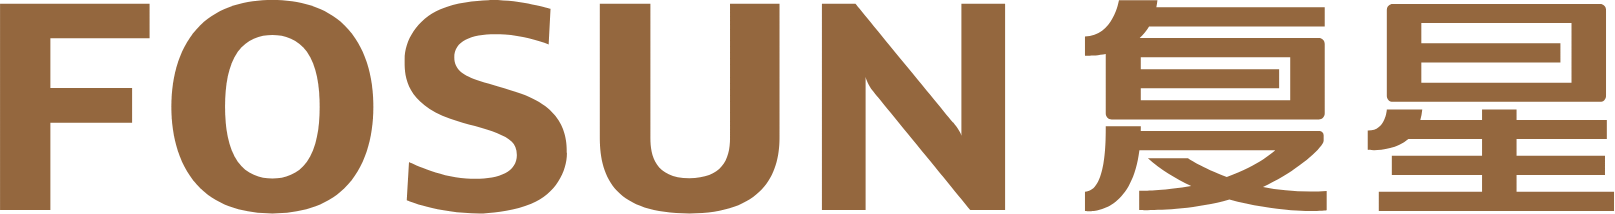 Fosun logo large (transparent PNG)